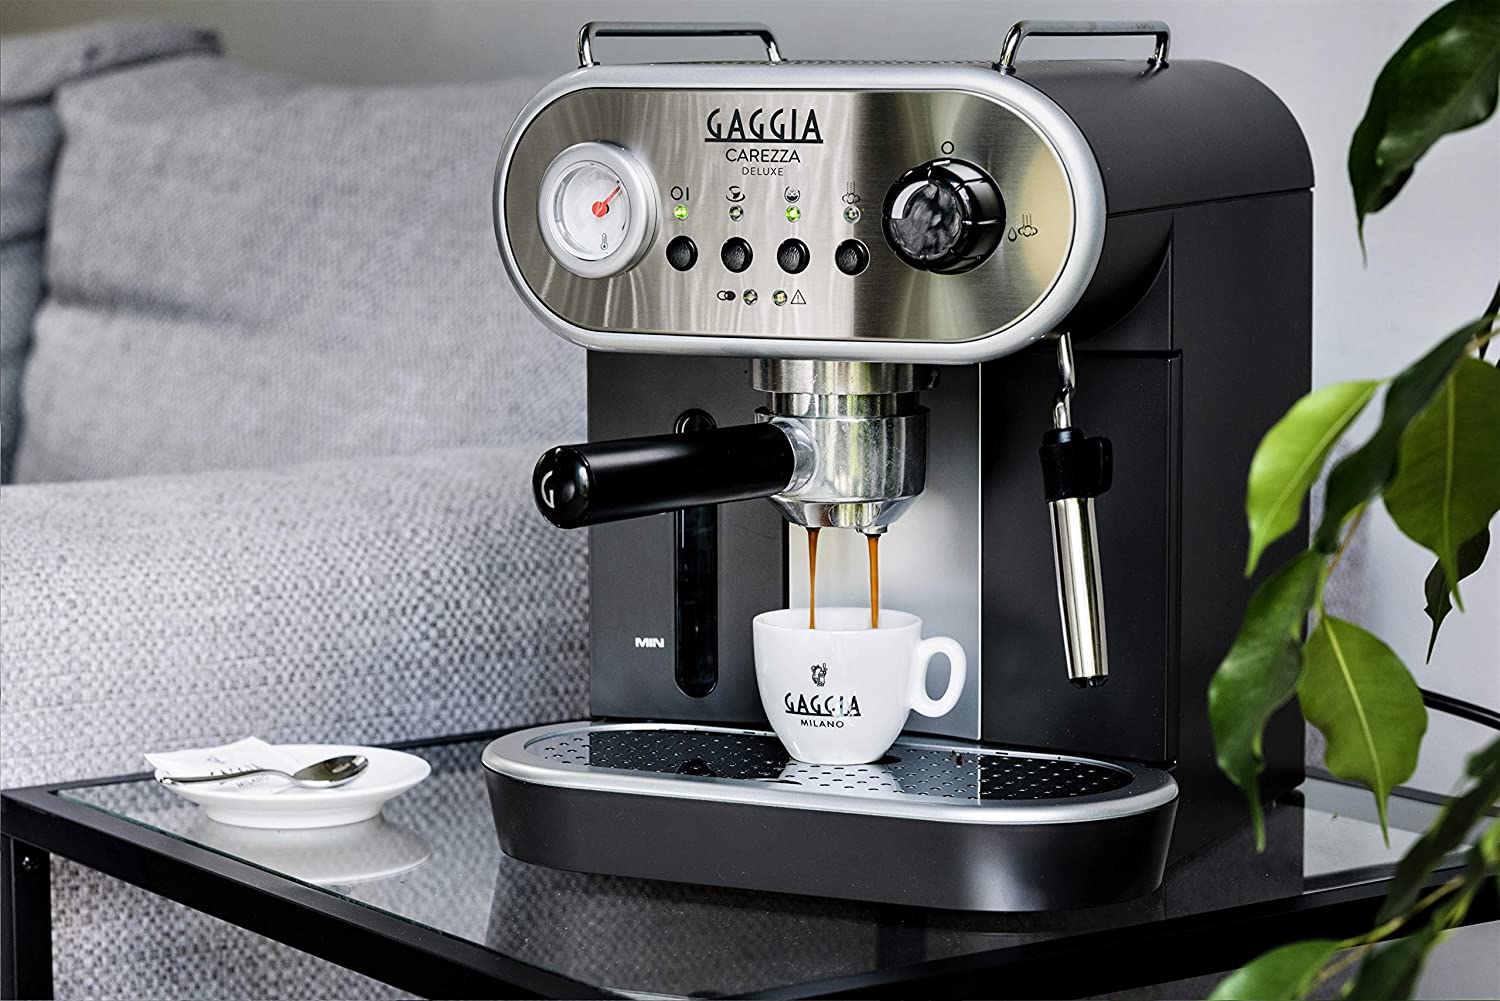 Gaggia RI852501 Carezza De Luxe Espresso Machine, Silver - image 5 of 6